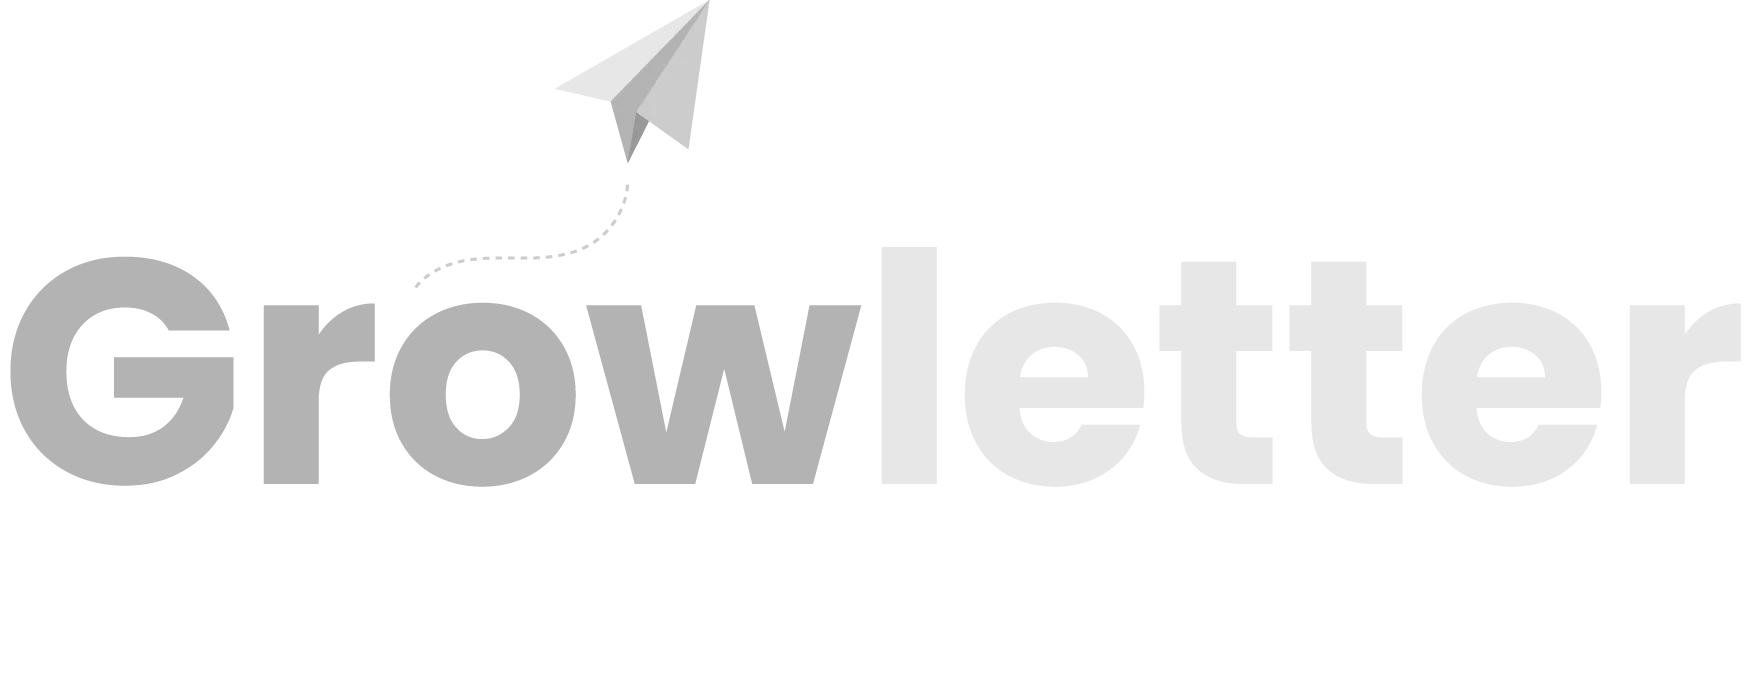 Growletter Logo